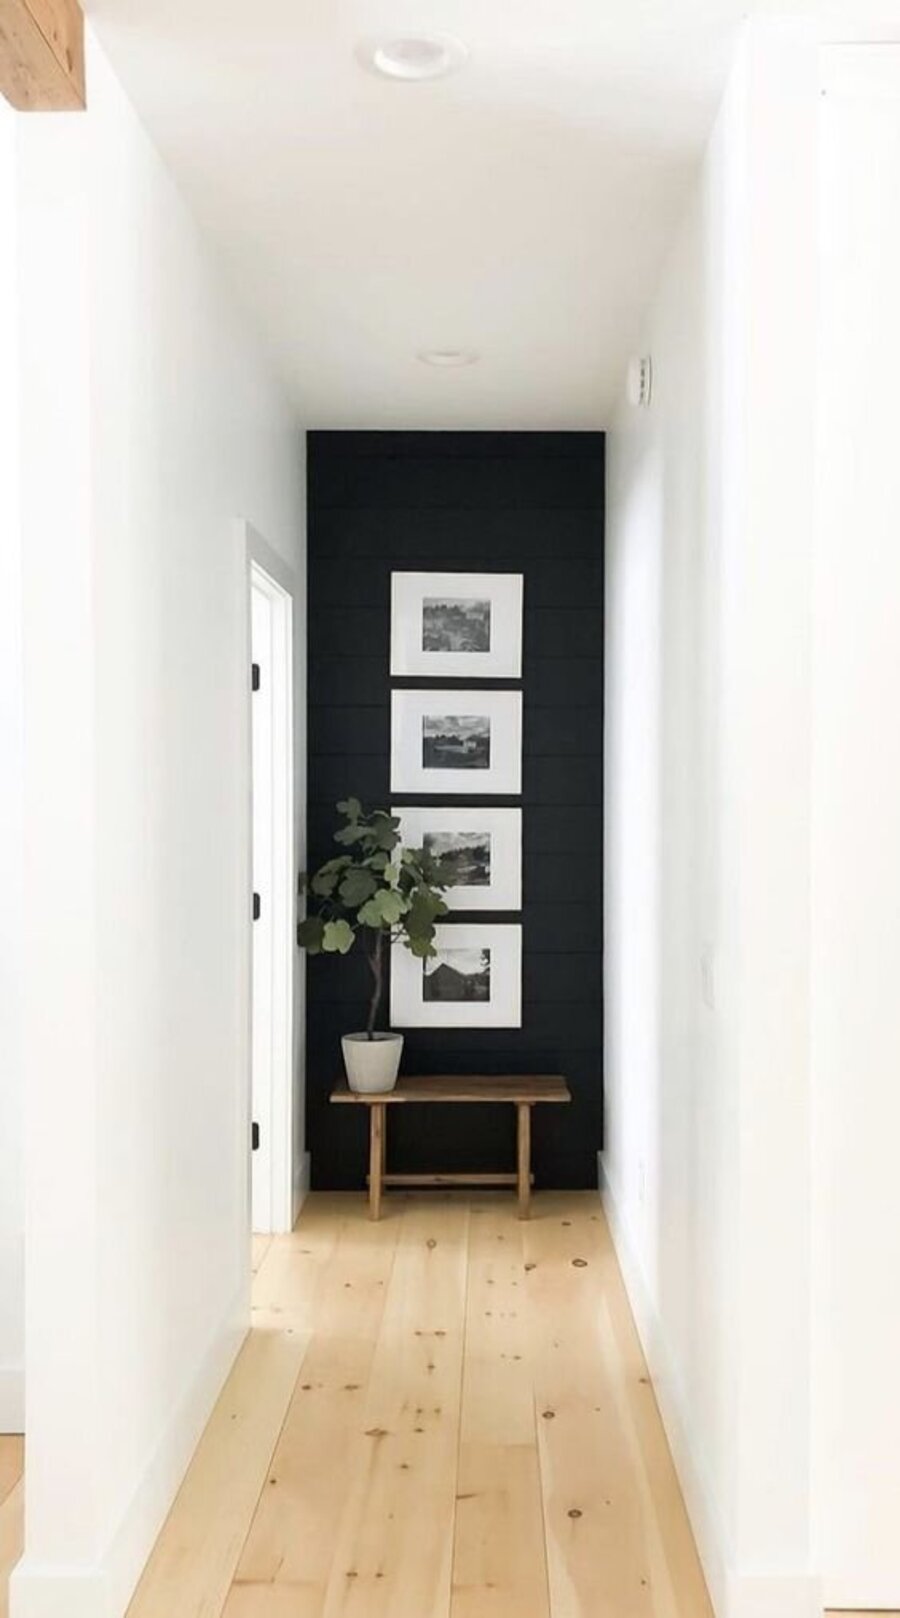 Largo pasillo de paredes blancas y piso de madera clara. La pared del fondo está pintada negra y de ella cuelgan cuatro fotografías con marco negro. En el suelo hay una pequeña banca de madera que sostiene una planta.